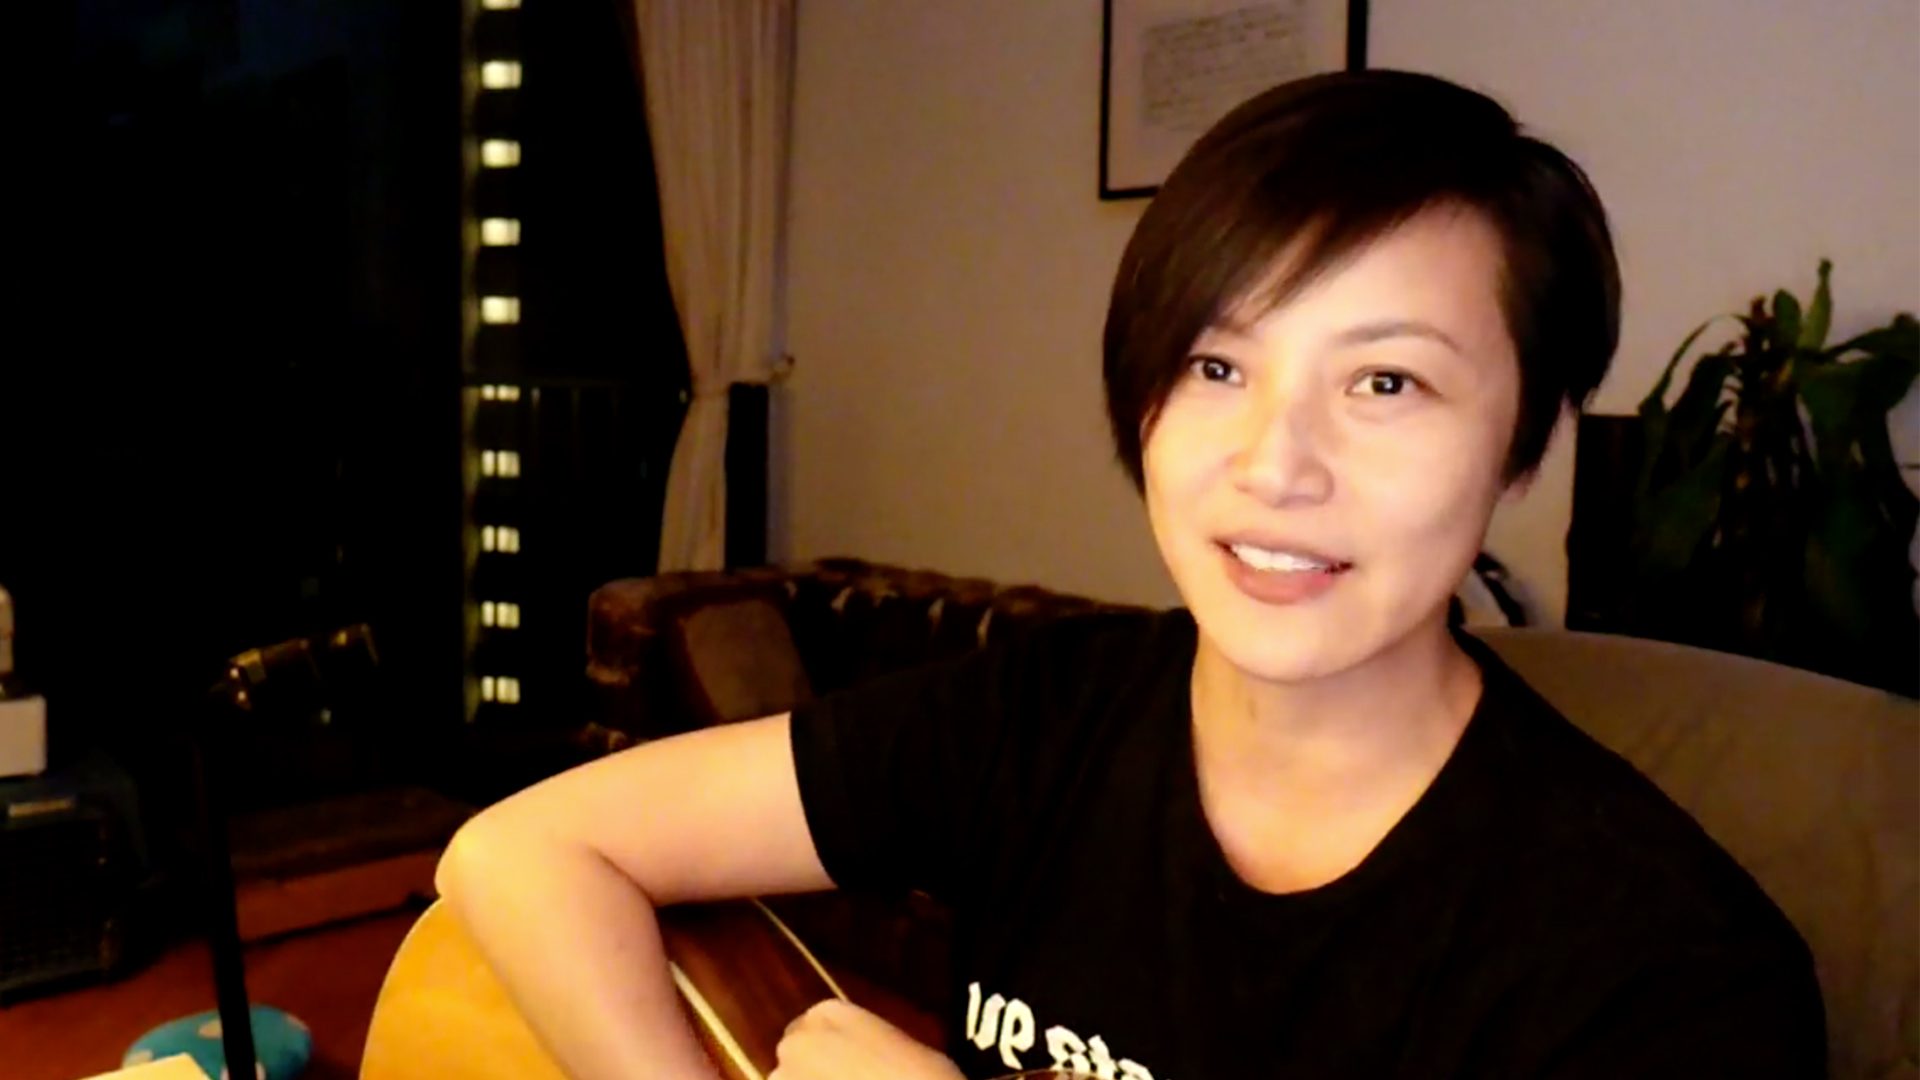 Hong Kong singer and activist Denise Ho says concerts canceled